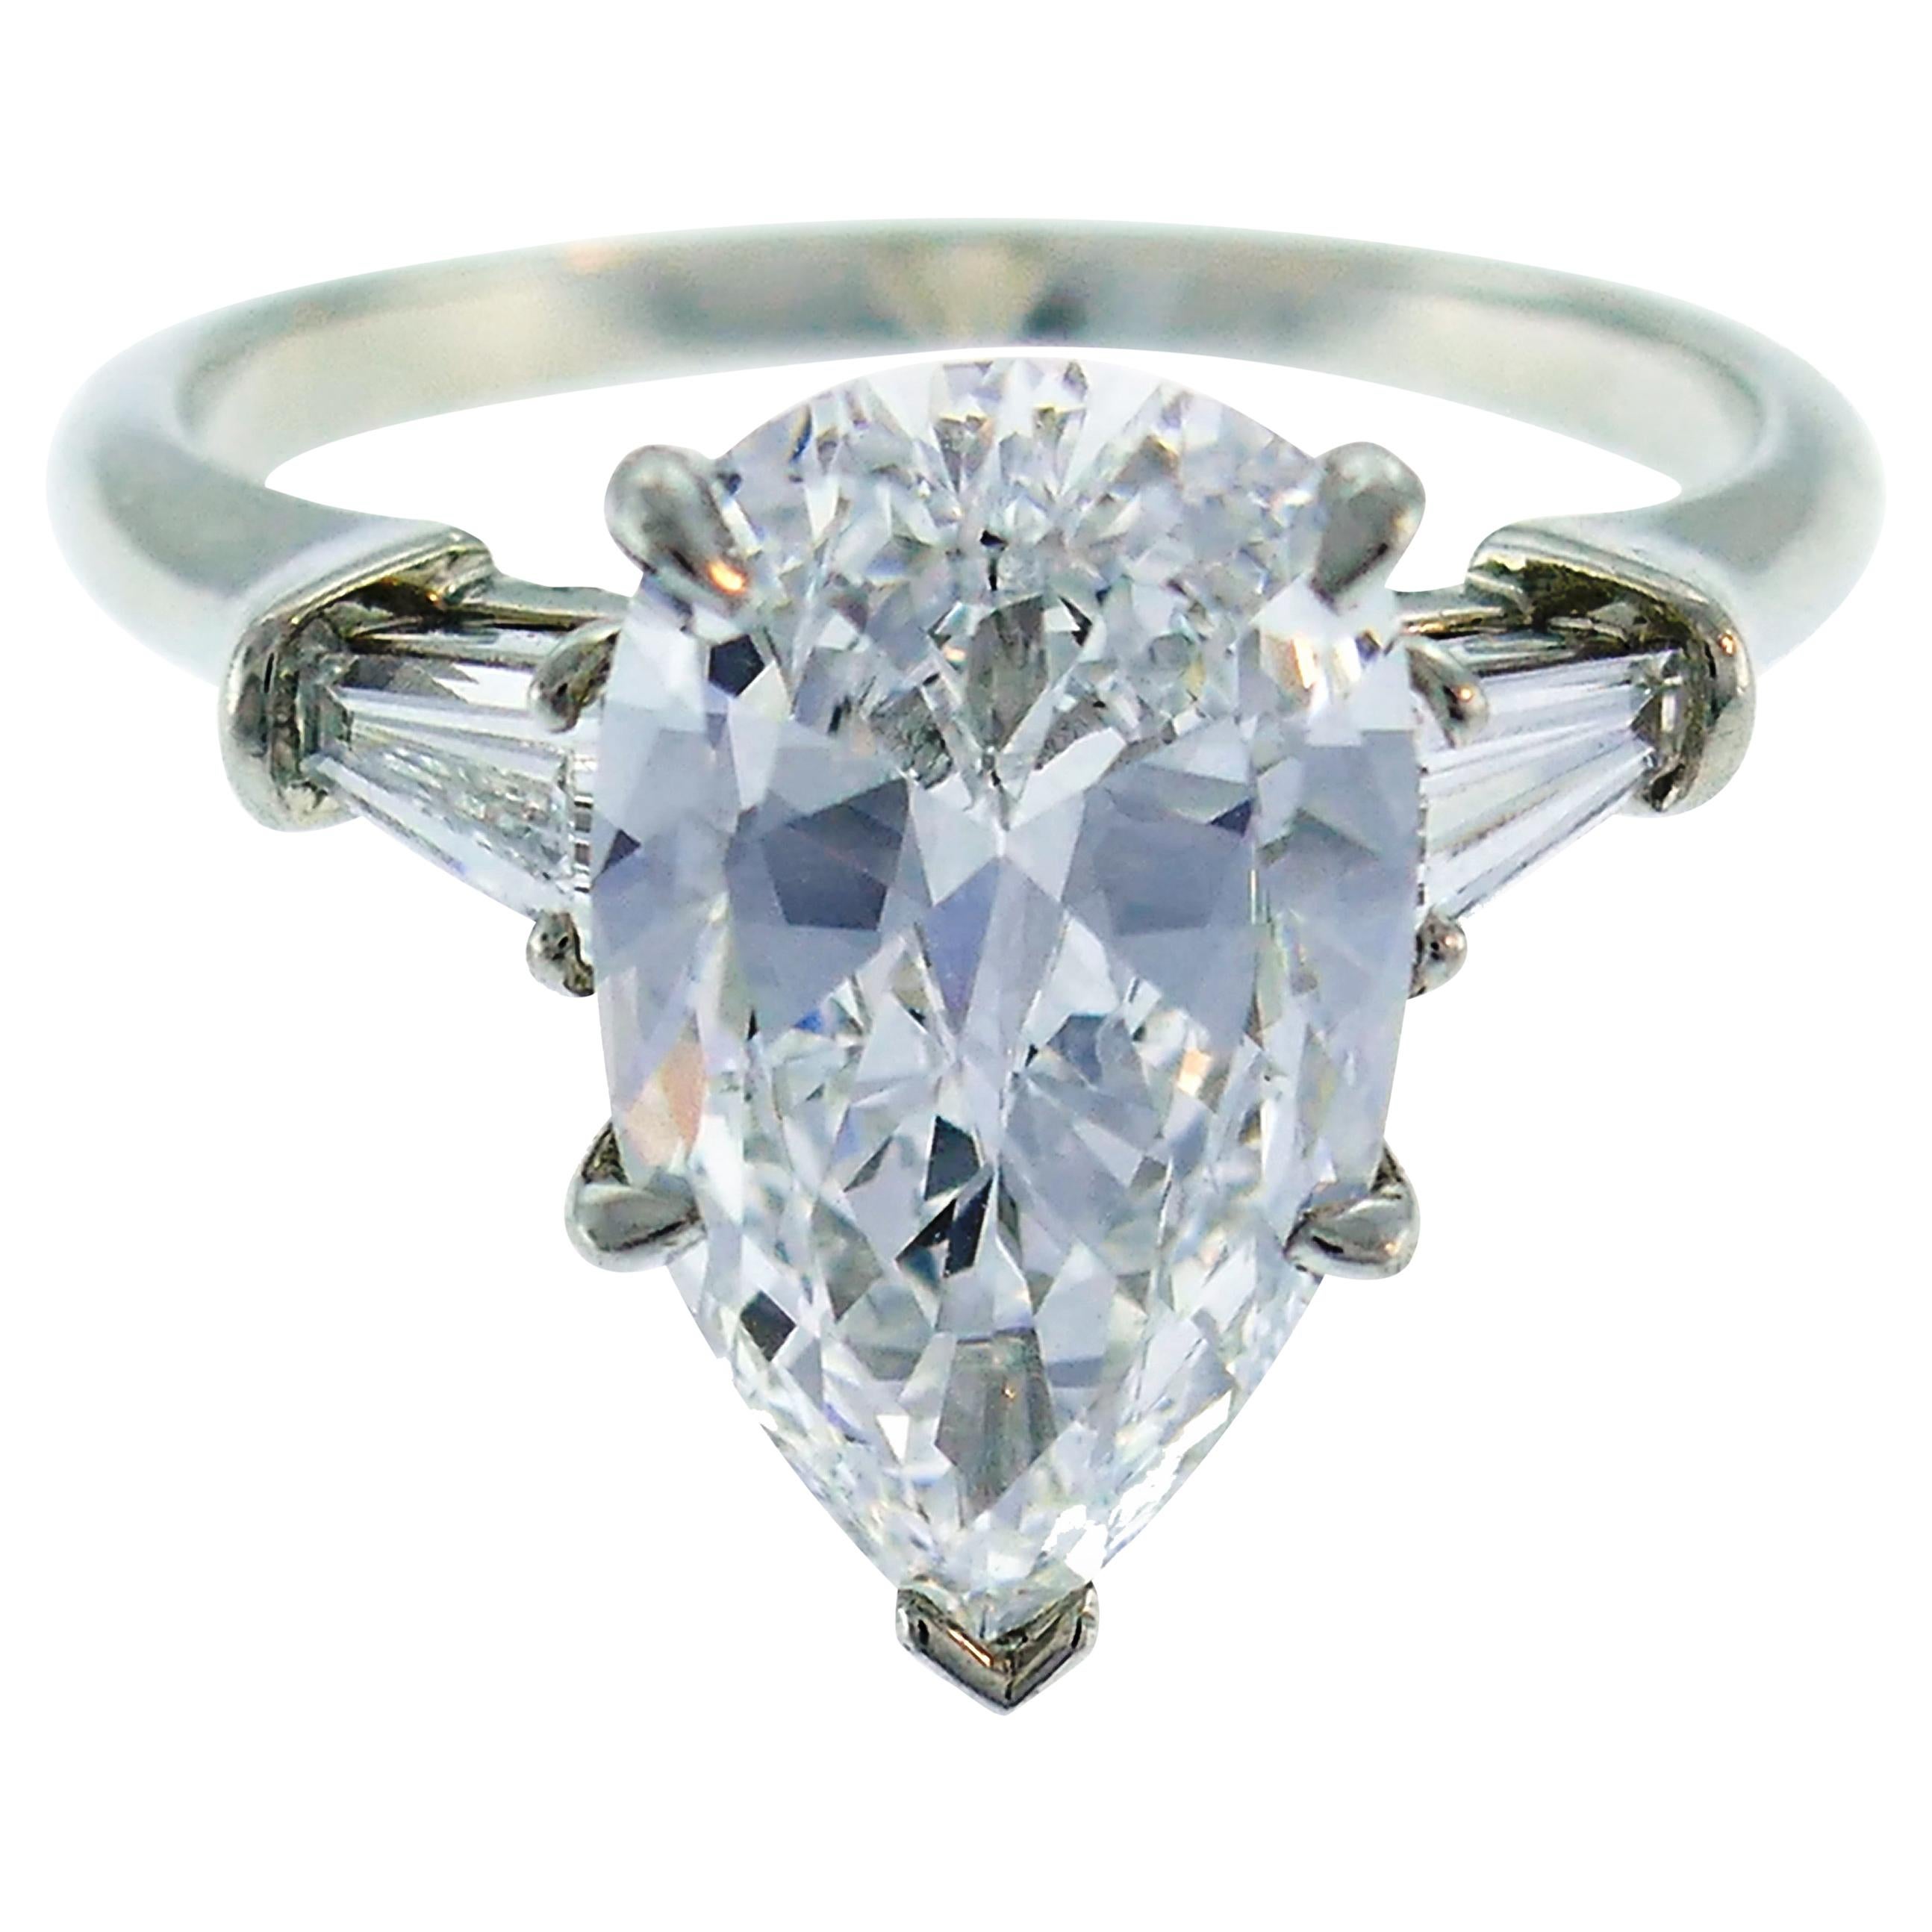 Harry Winston Diamond Platinum Ring 3.60 Carat Pear D/VVS1 GIA